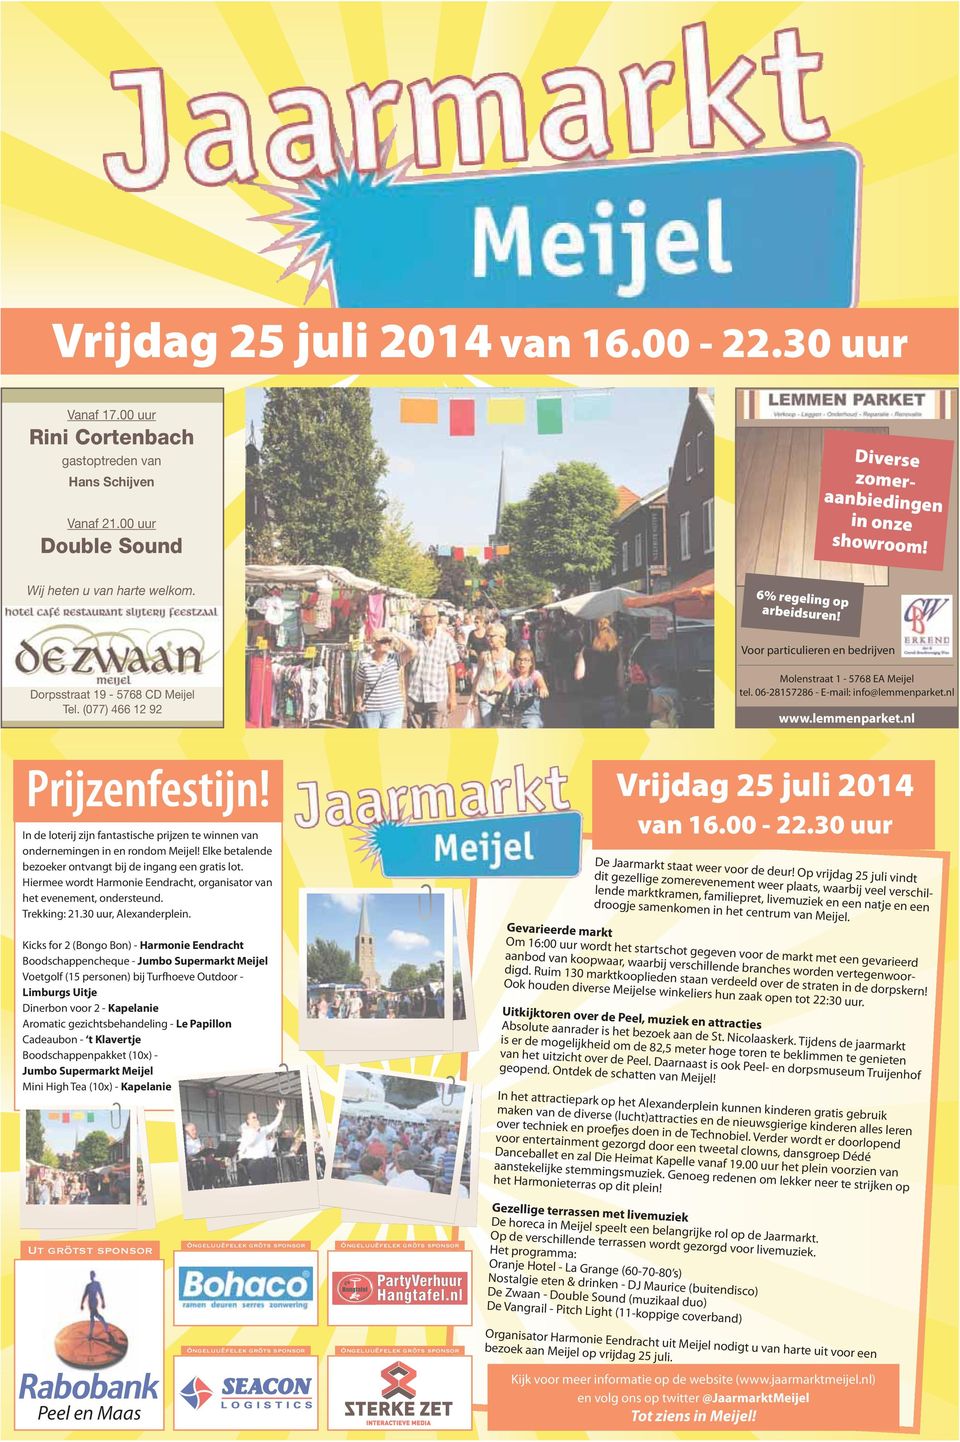 06-28157286 - -mail: info@lemmenparket.nl www.lemmenparket.nl Prijzenfestijn! In de loterij zijn fantastische prijzen te winnen van ondernemingen in en rondom Meijel!